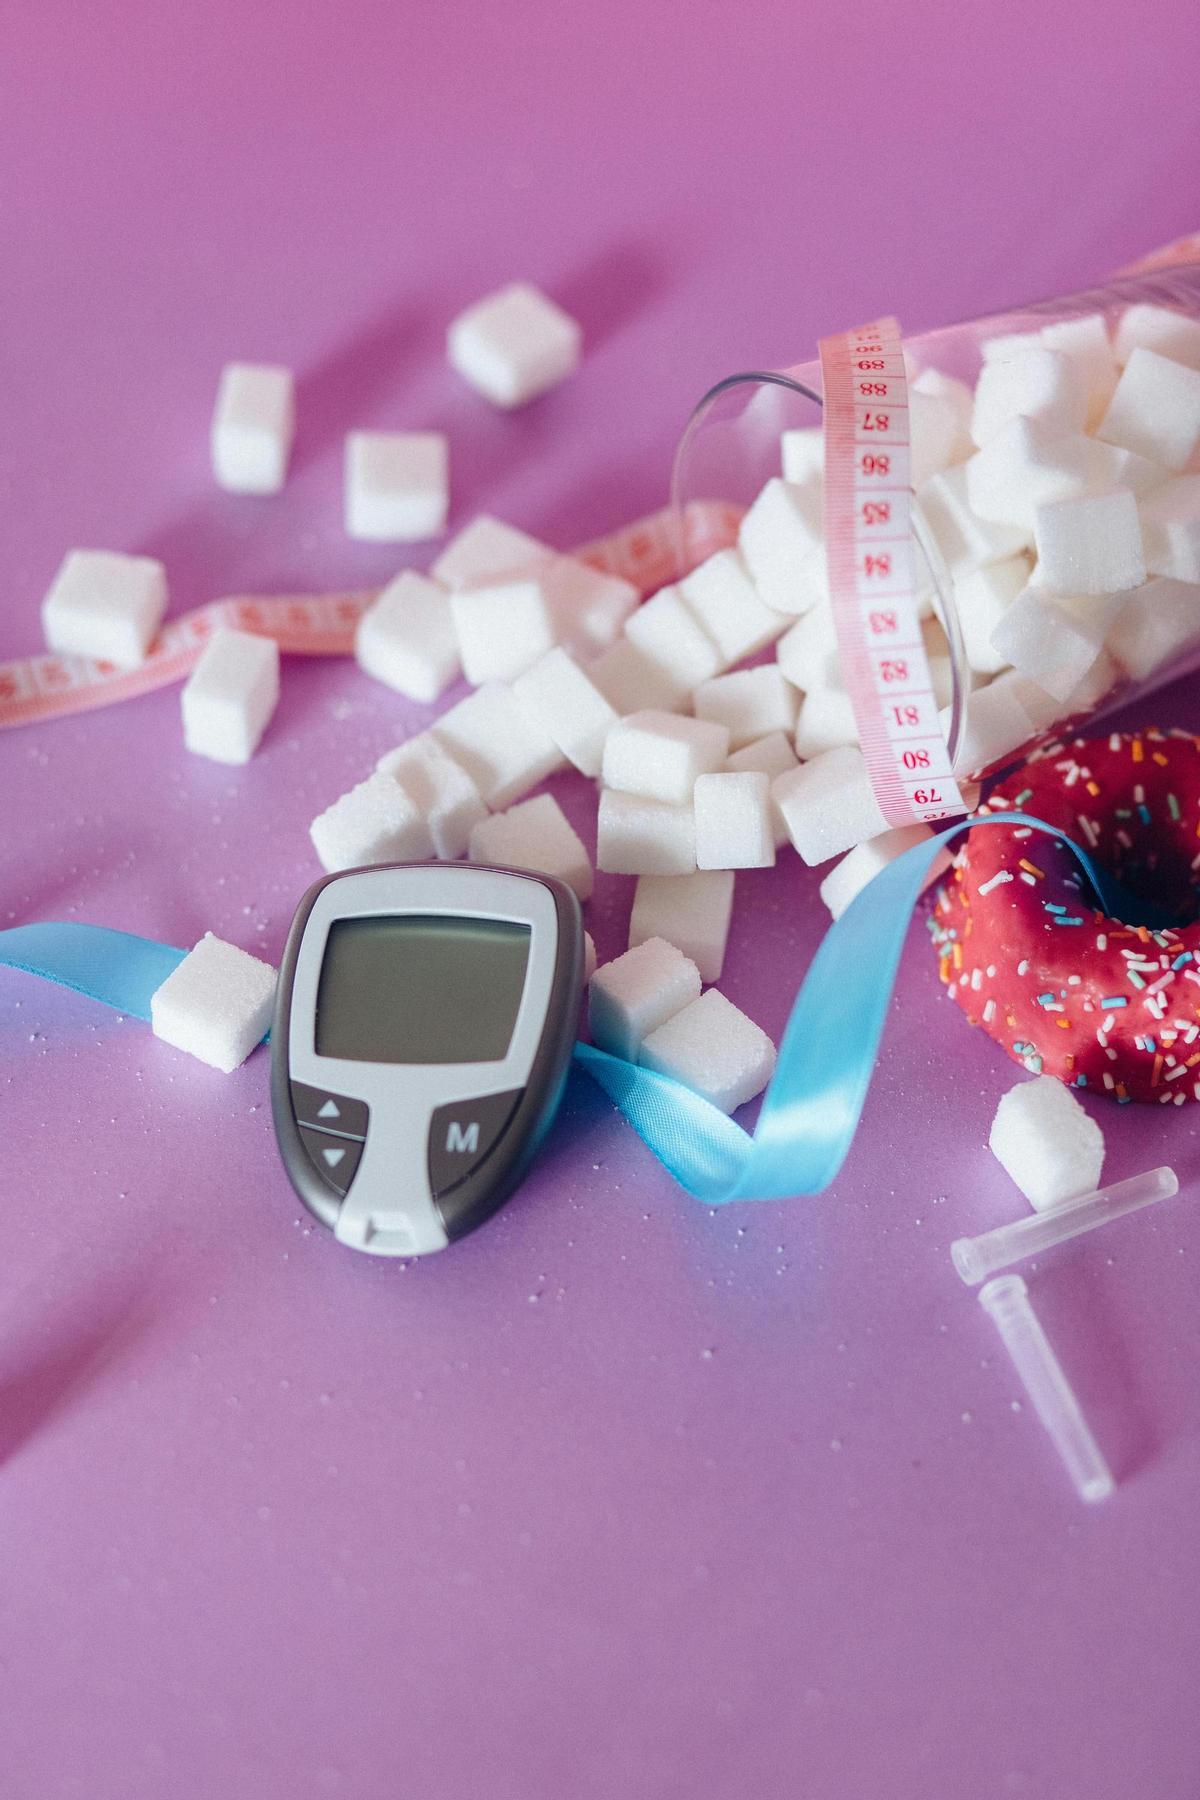 Imagen de archivo: medición de insulina